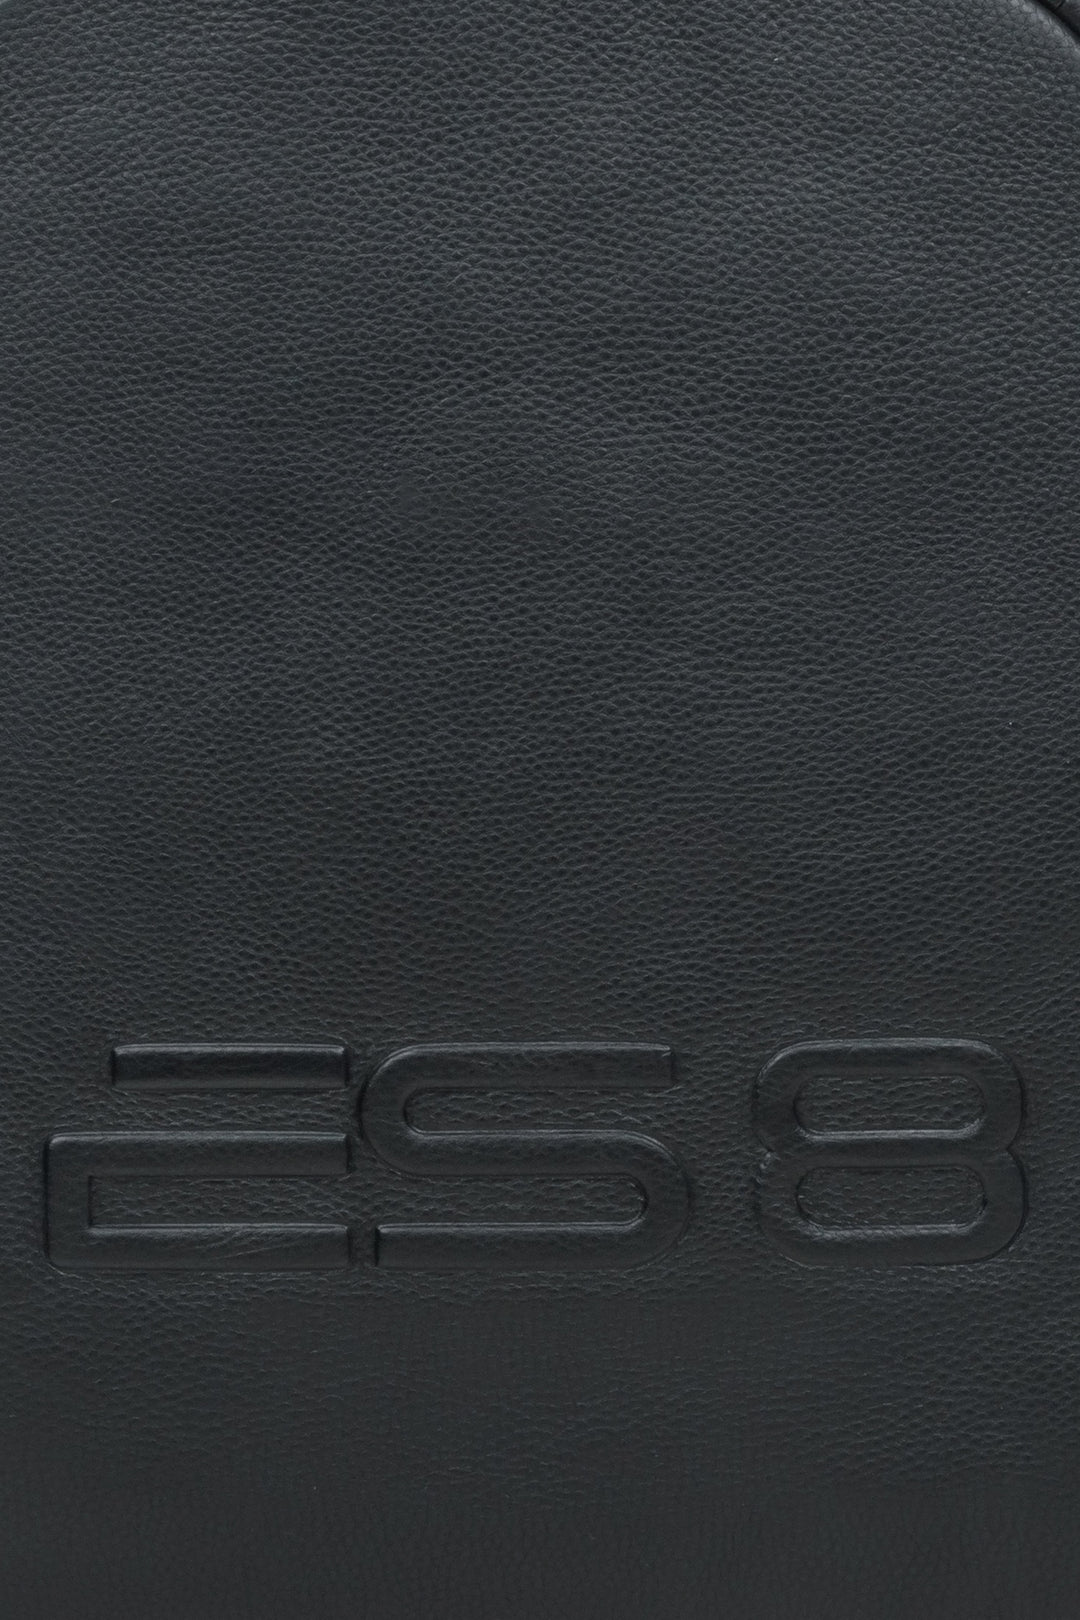 Skórzany czarny plecak męski miejski ES8 - zbliżenie na detale.